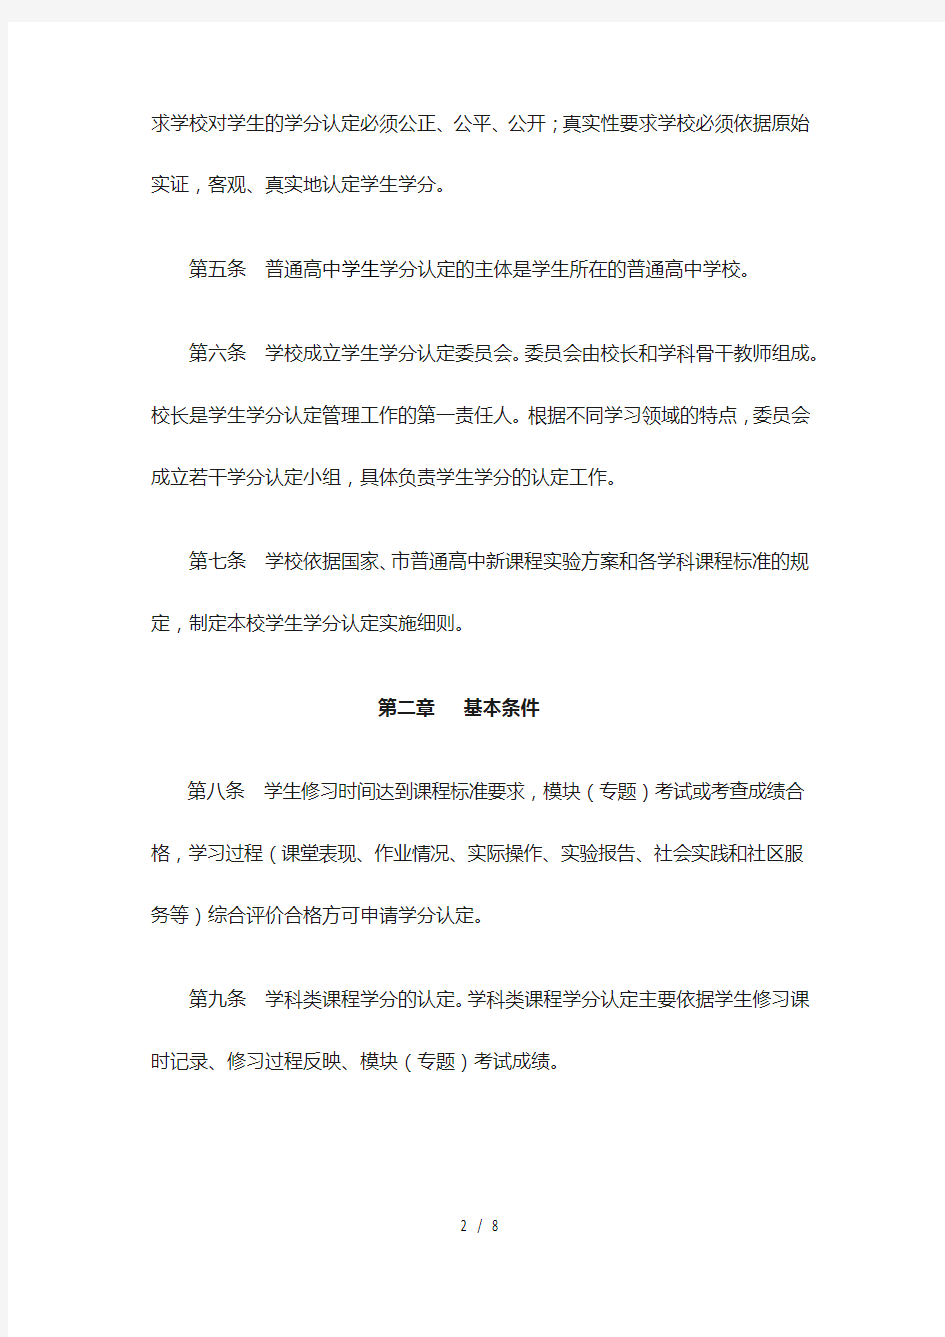 重庆市普通高中学生学分认定管理办法